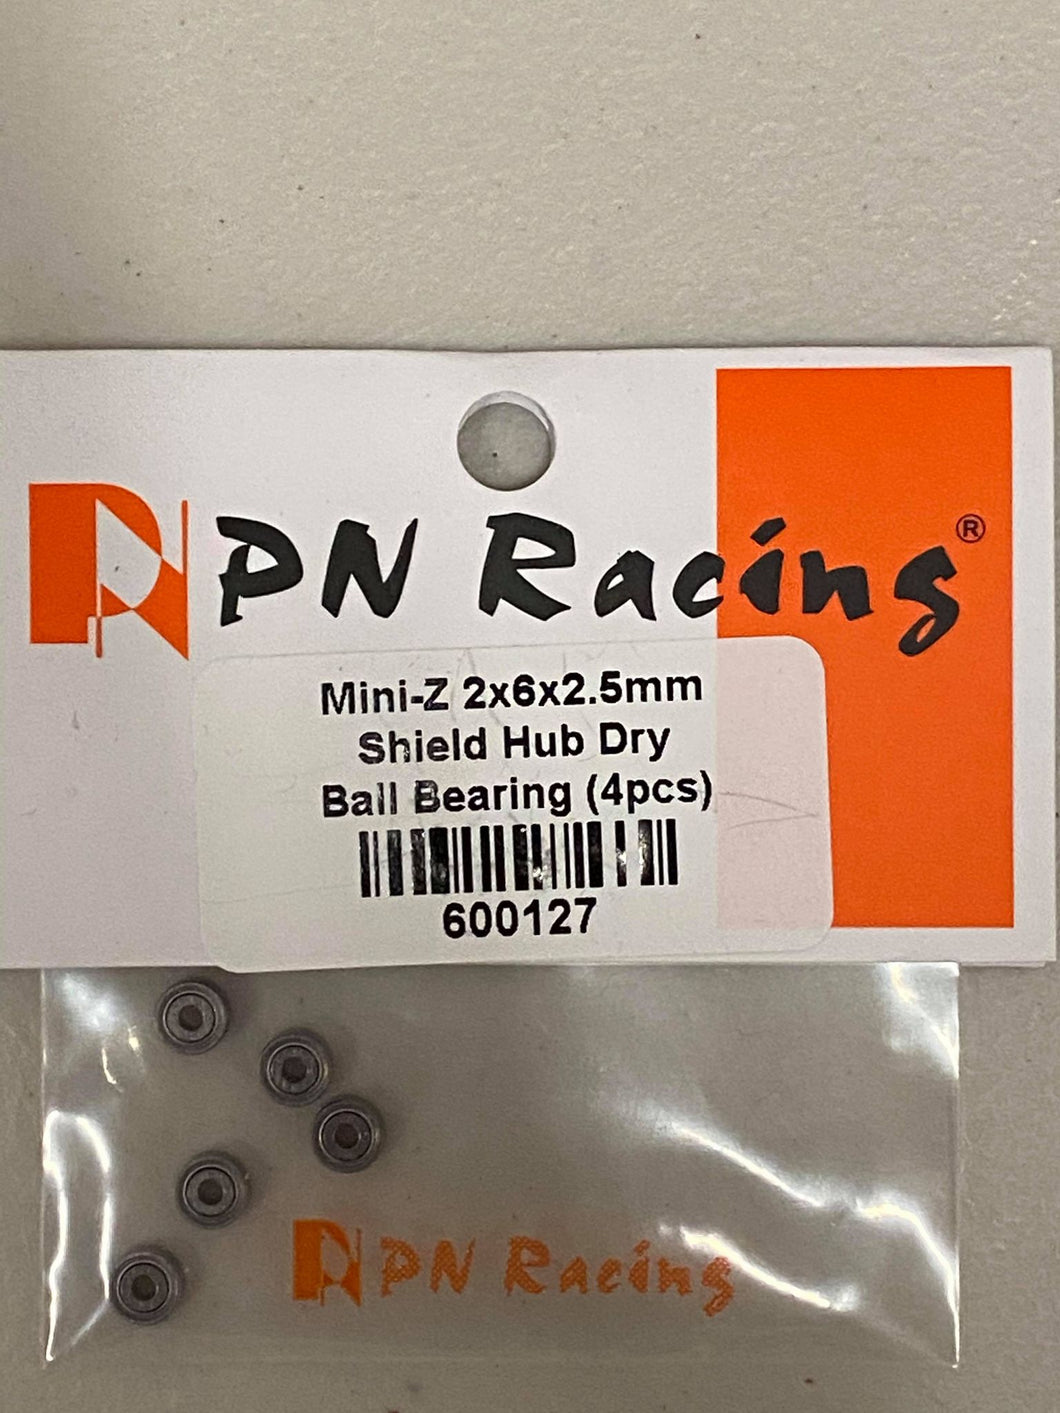 600127 PN Racing Mini-Z 2x6x2.5mm Shield Hub Dry Ball Bearing (4pcs)